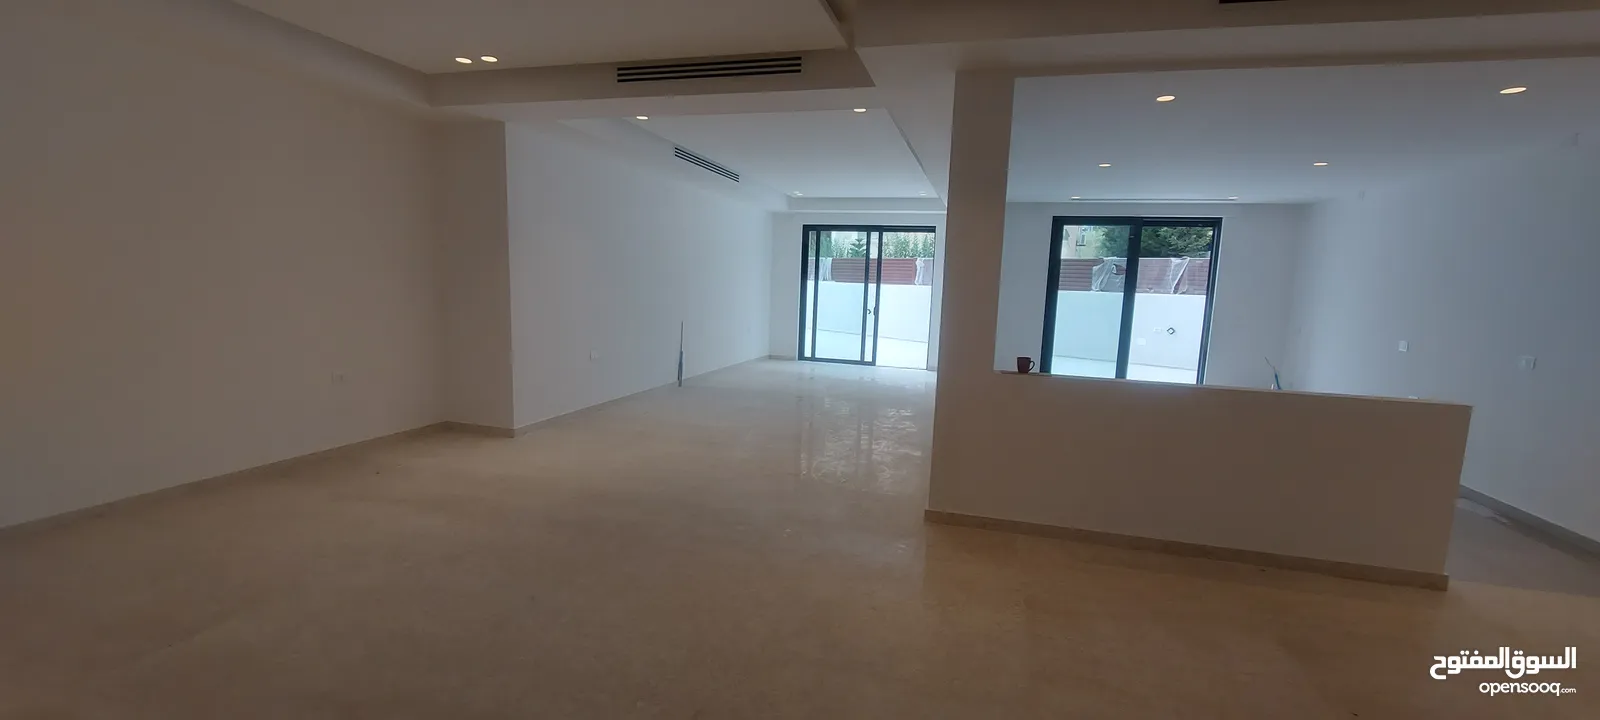 شقة طابق شبه ارضي للبيع في عبدون 235 متر مع ساحة خارجية كبيرة